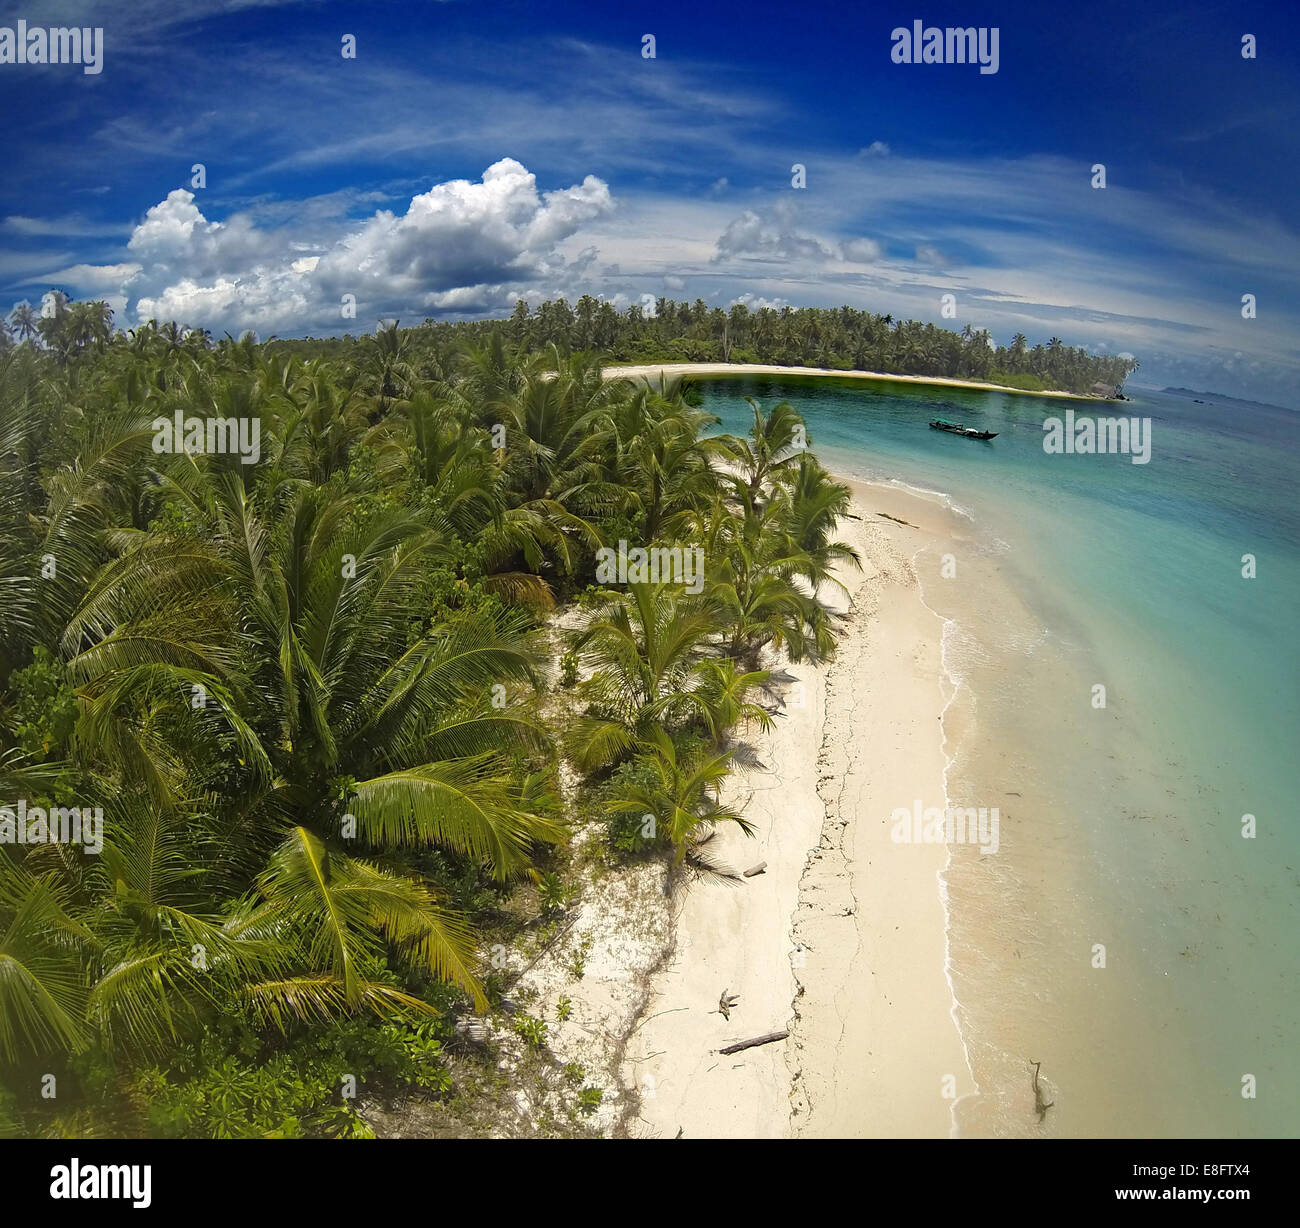 L'Indonésie, les îles Mentawai, vue aérienne de la plage tropicale Banque D'Images